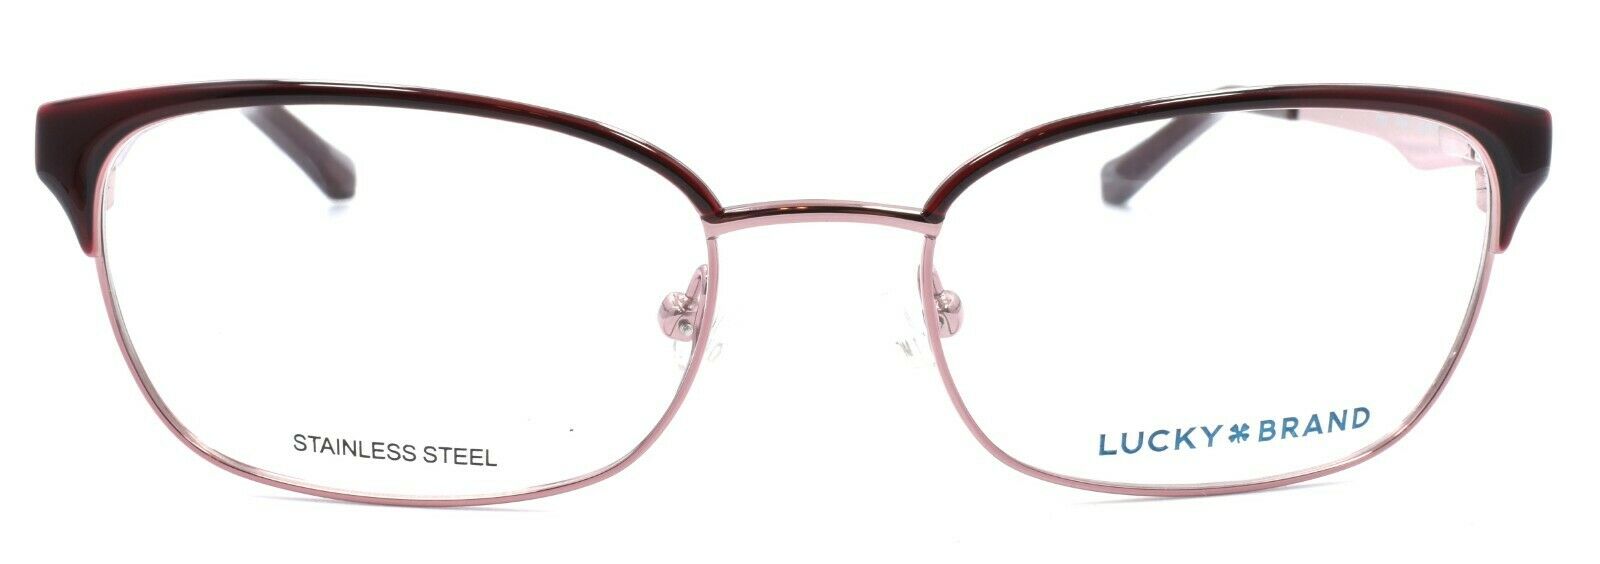 2-LUCKY BRAND D703 Eyeglasses Frames SMALL 49-16-130 Pink + CASE-751286282191-IKSpecs